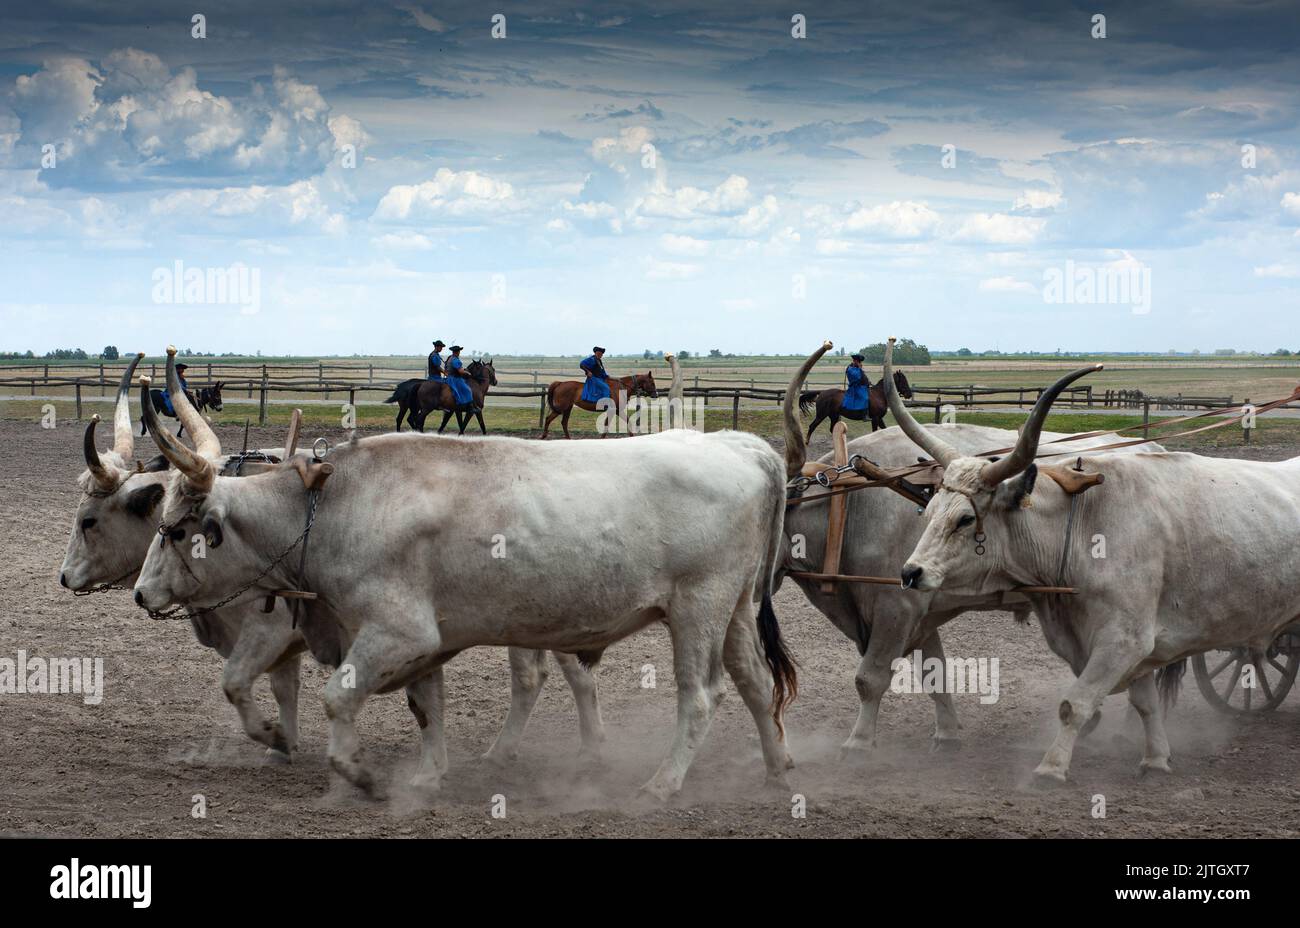 Magyar Cowboy-Auftritt auf einer Ranch in Ungarn zeigt Ochsen und Pferde gut ausgebildet, gehorsam, bis zum Peitschenhieb diszipliniert.Siehe Langhorn-Ochsen. Stockfoto